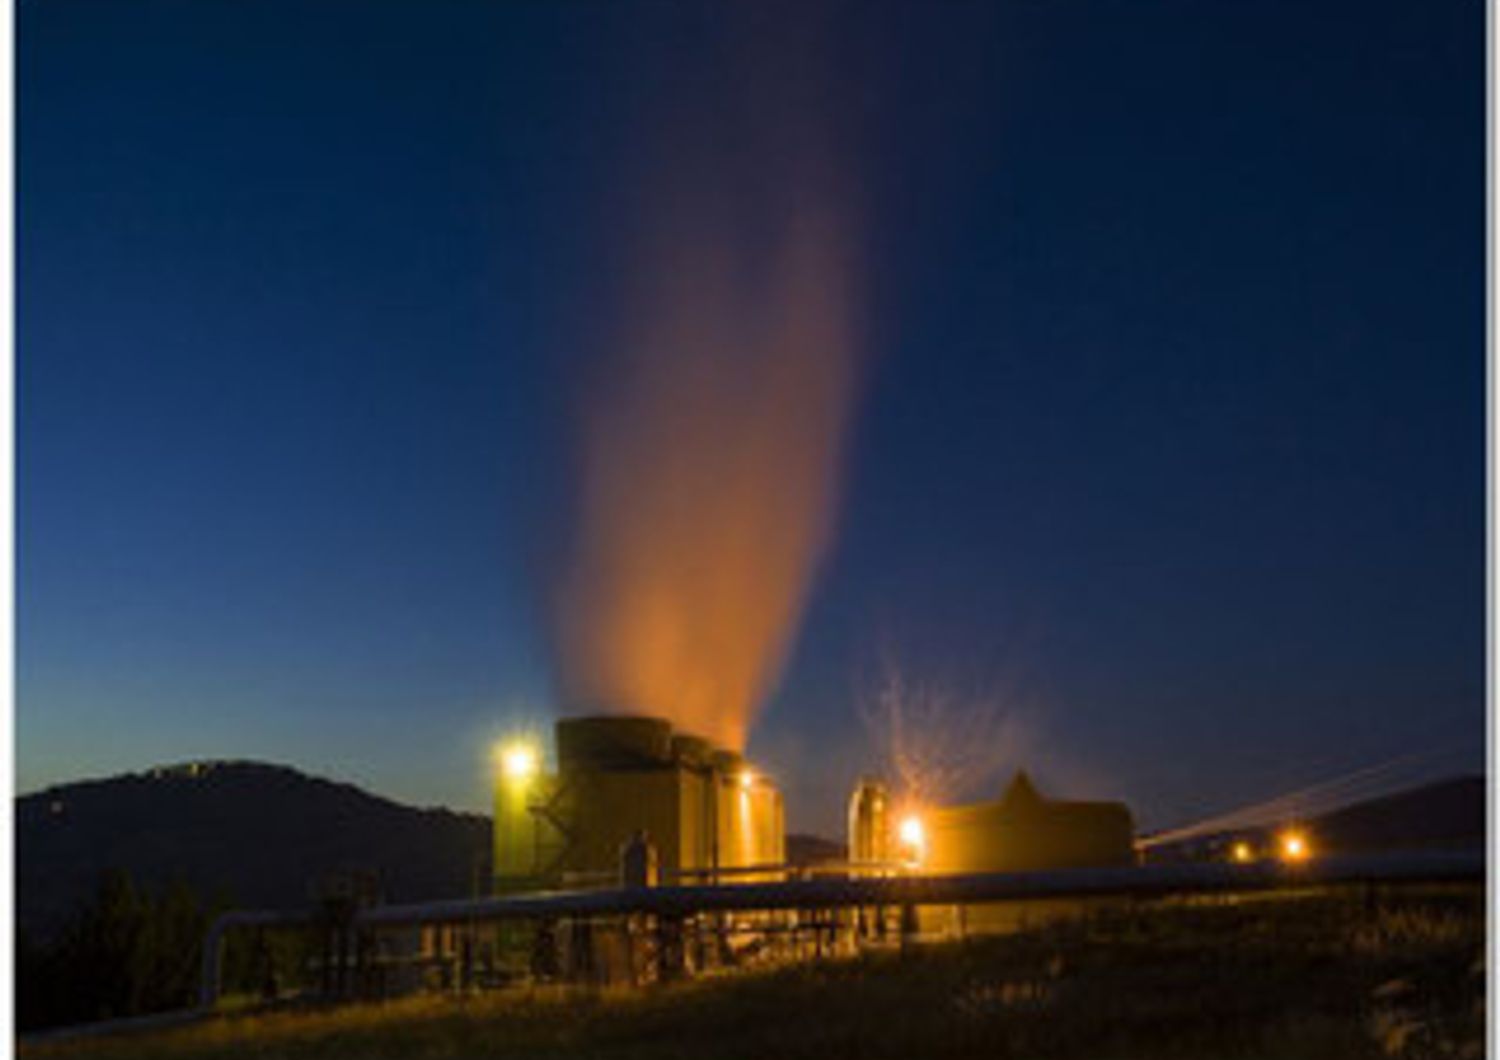 Cornia 2 impianto geotermia e biomassa (enel Green Power)&nbsp;